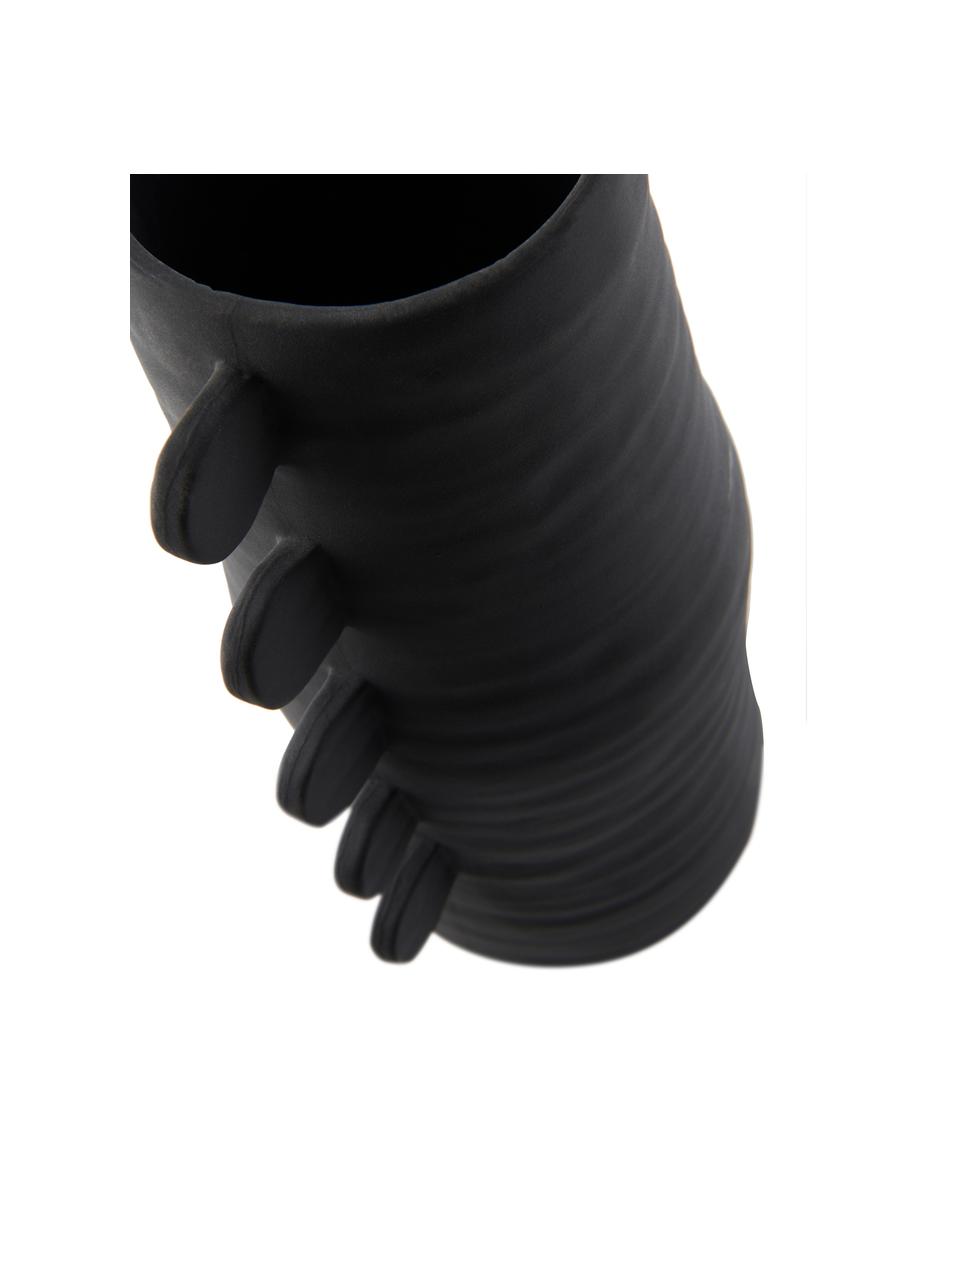 Design vaas Stila in zwart, Polyresin, Zwart, B 13 cm x H 31 cm